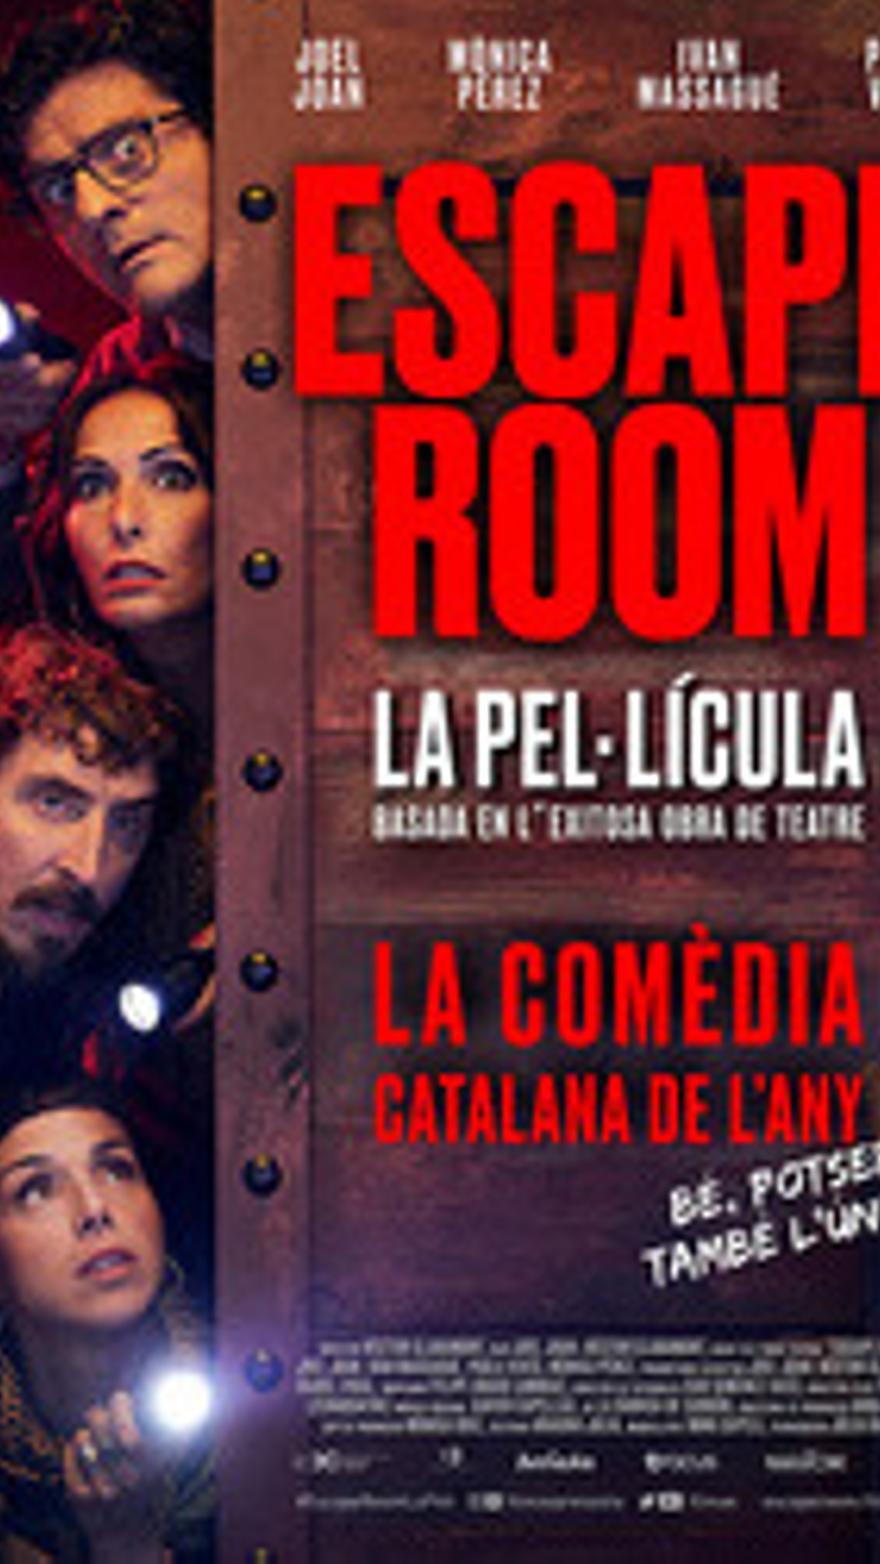 Escape Room: La pel·lícula